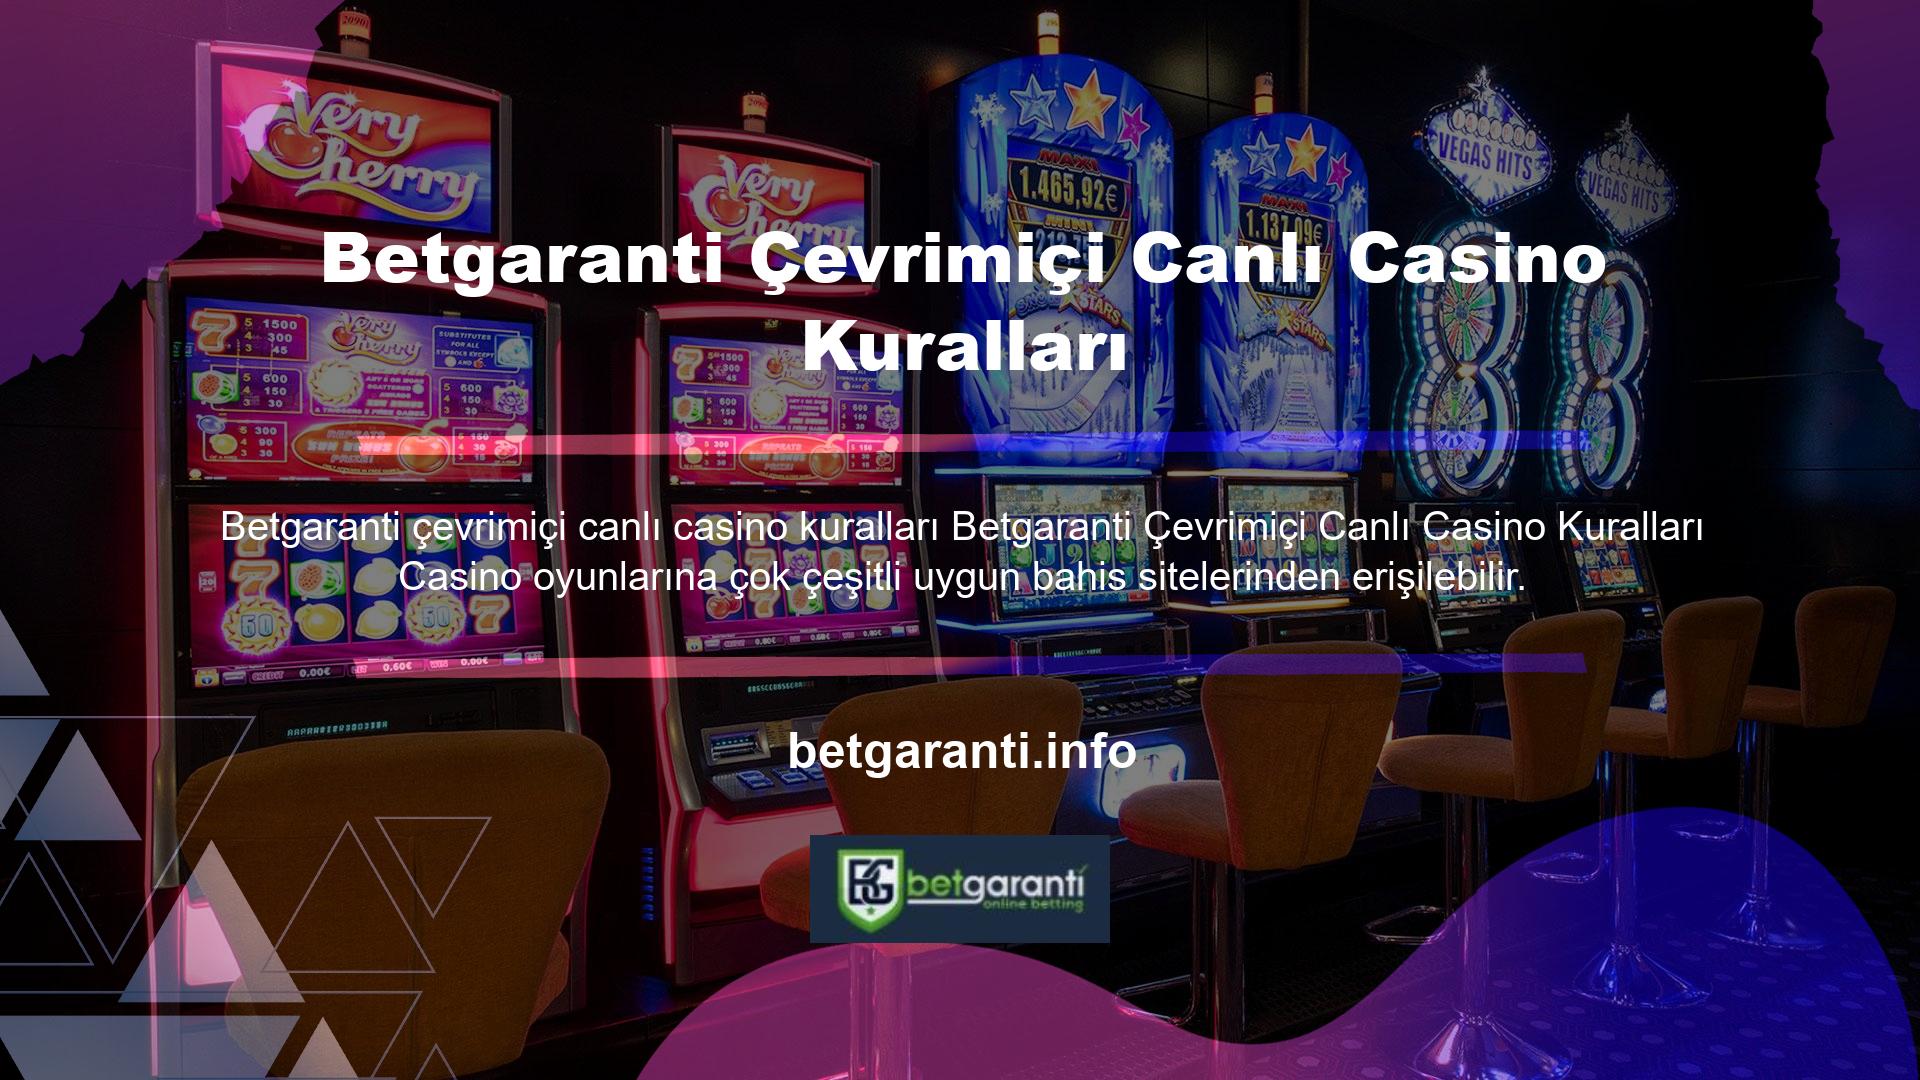 Casino ve canlı oyunlarda oyun düzenlemeleri oluşturmak ve oyun kulübü hizmetleri sunmak, belirli oyun sözleşmesi şartlarının bir parçasıdır